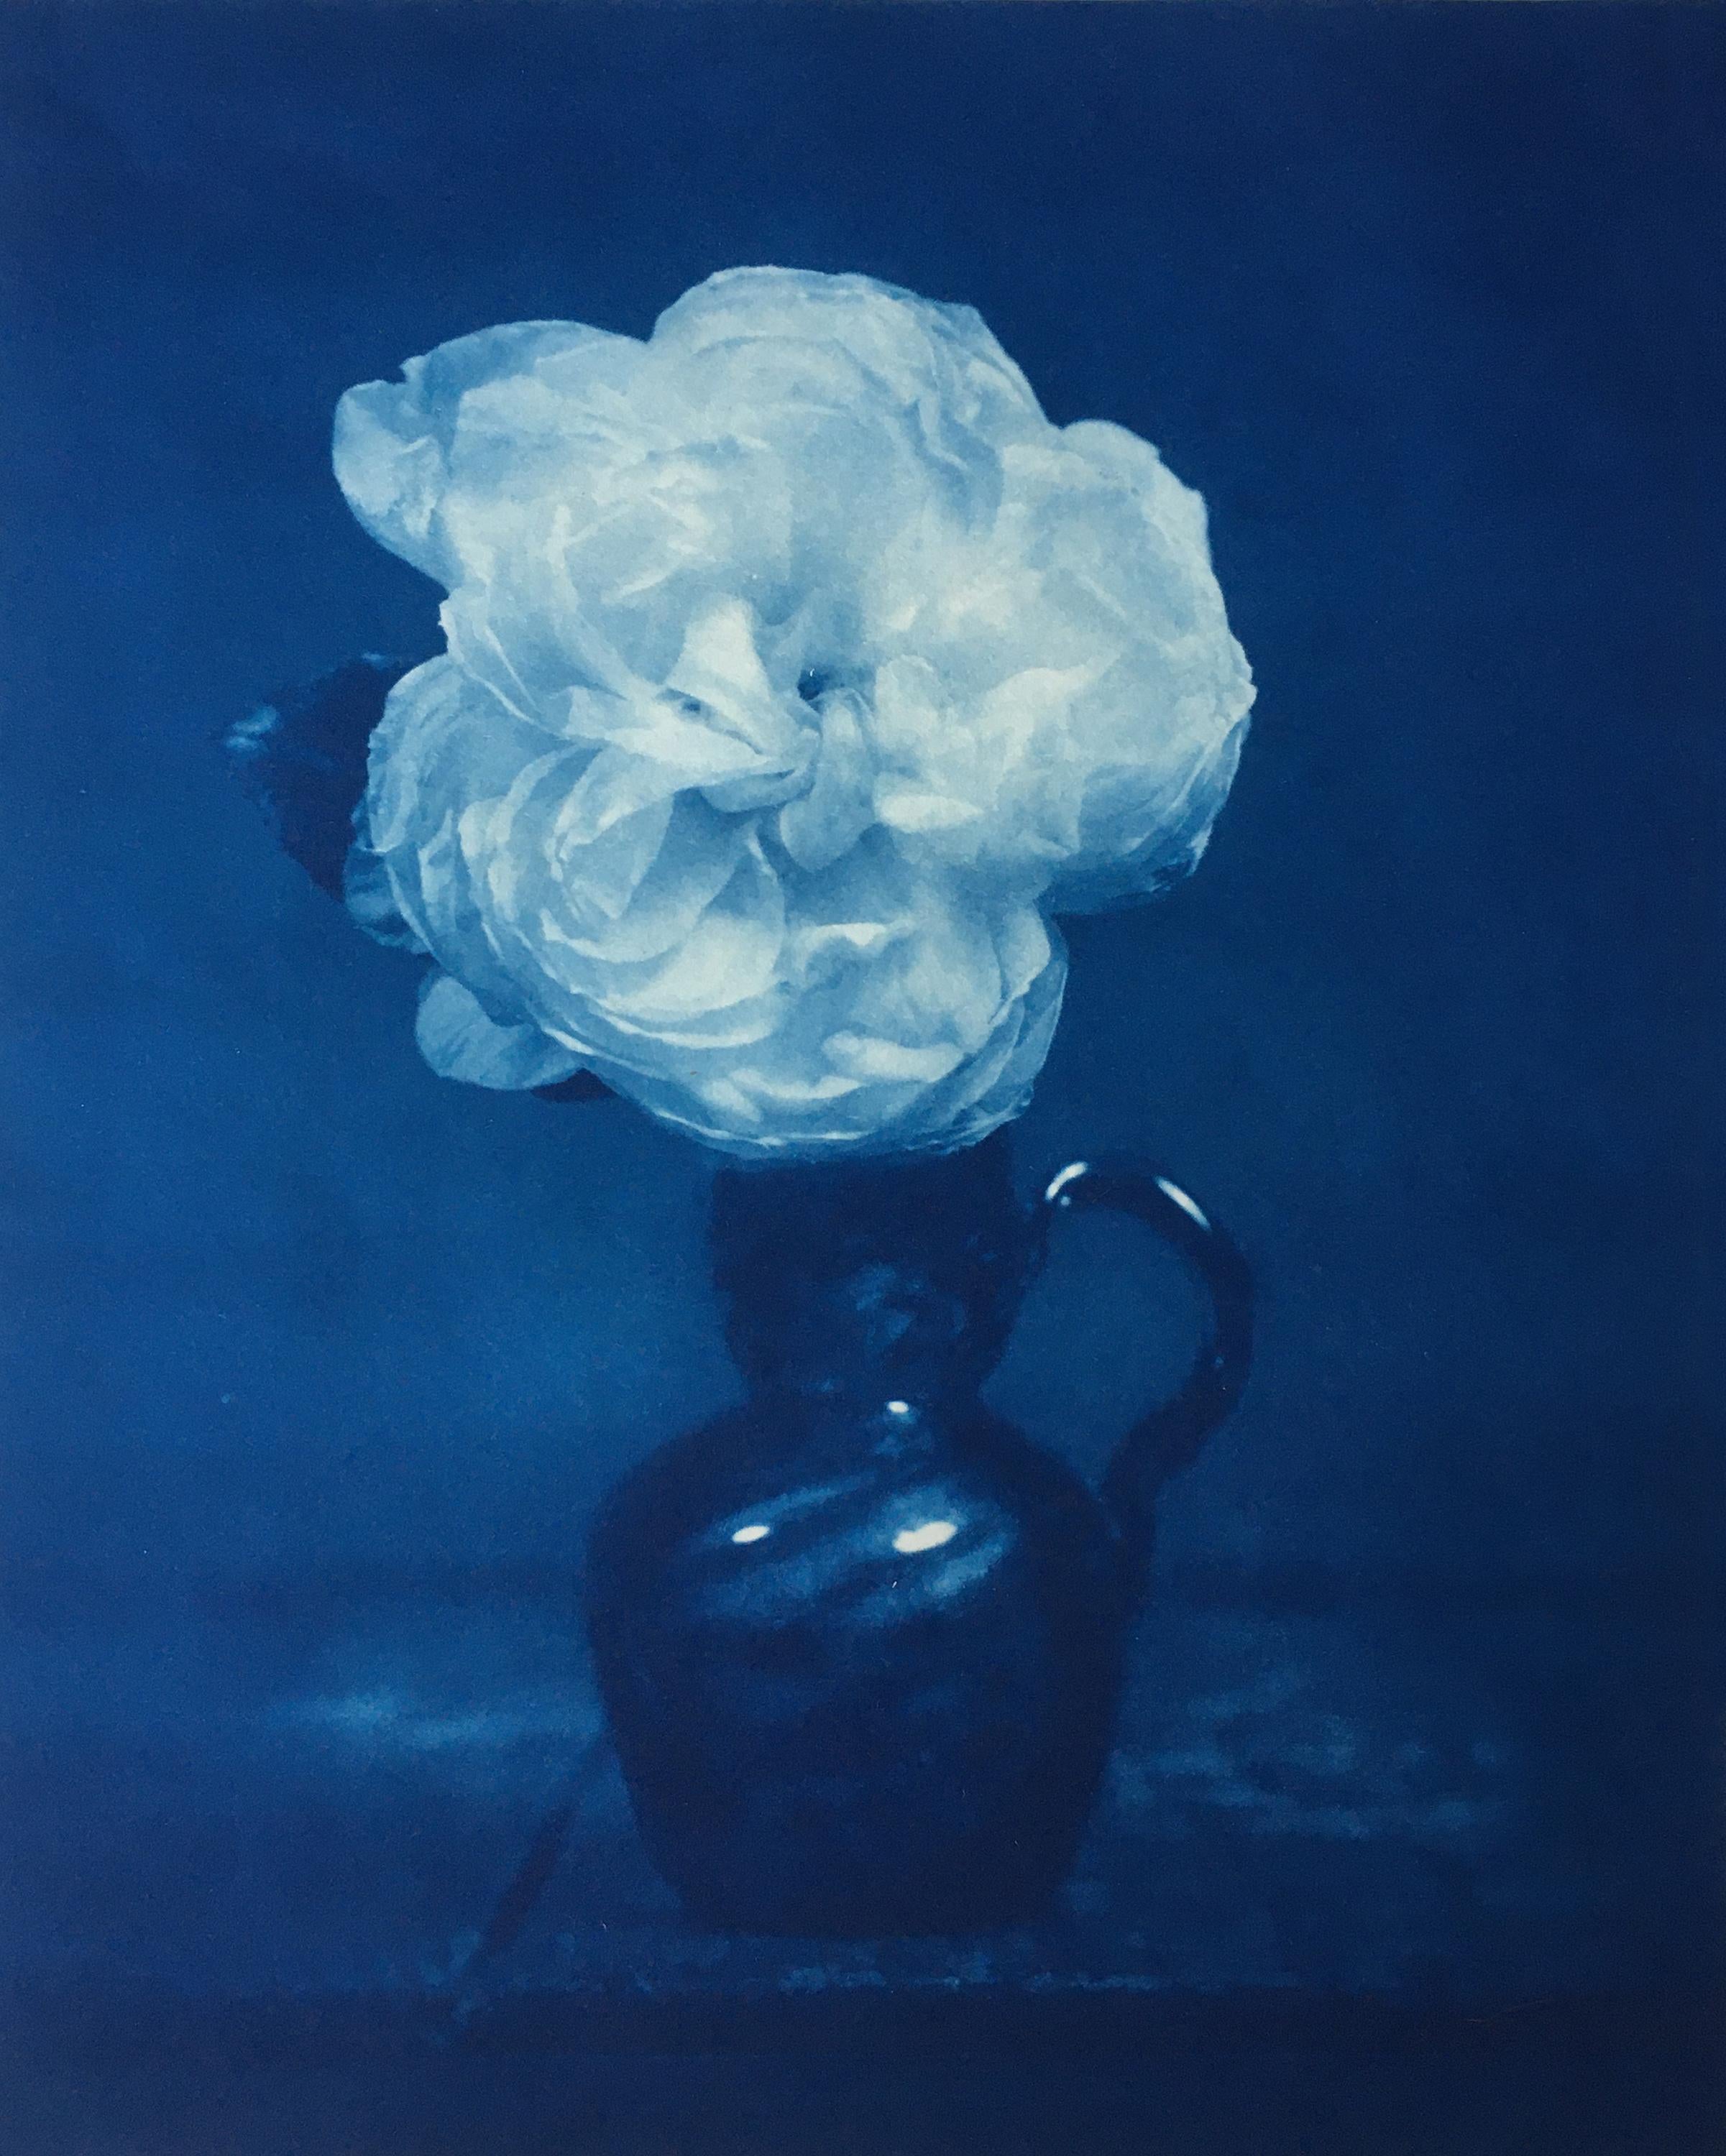 David Sokosh Still-Life Print - Rose in Blue Glass Vase (Romantic Still Life Cyanotype Still Life Photo, Framed)